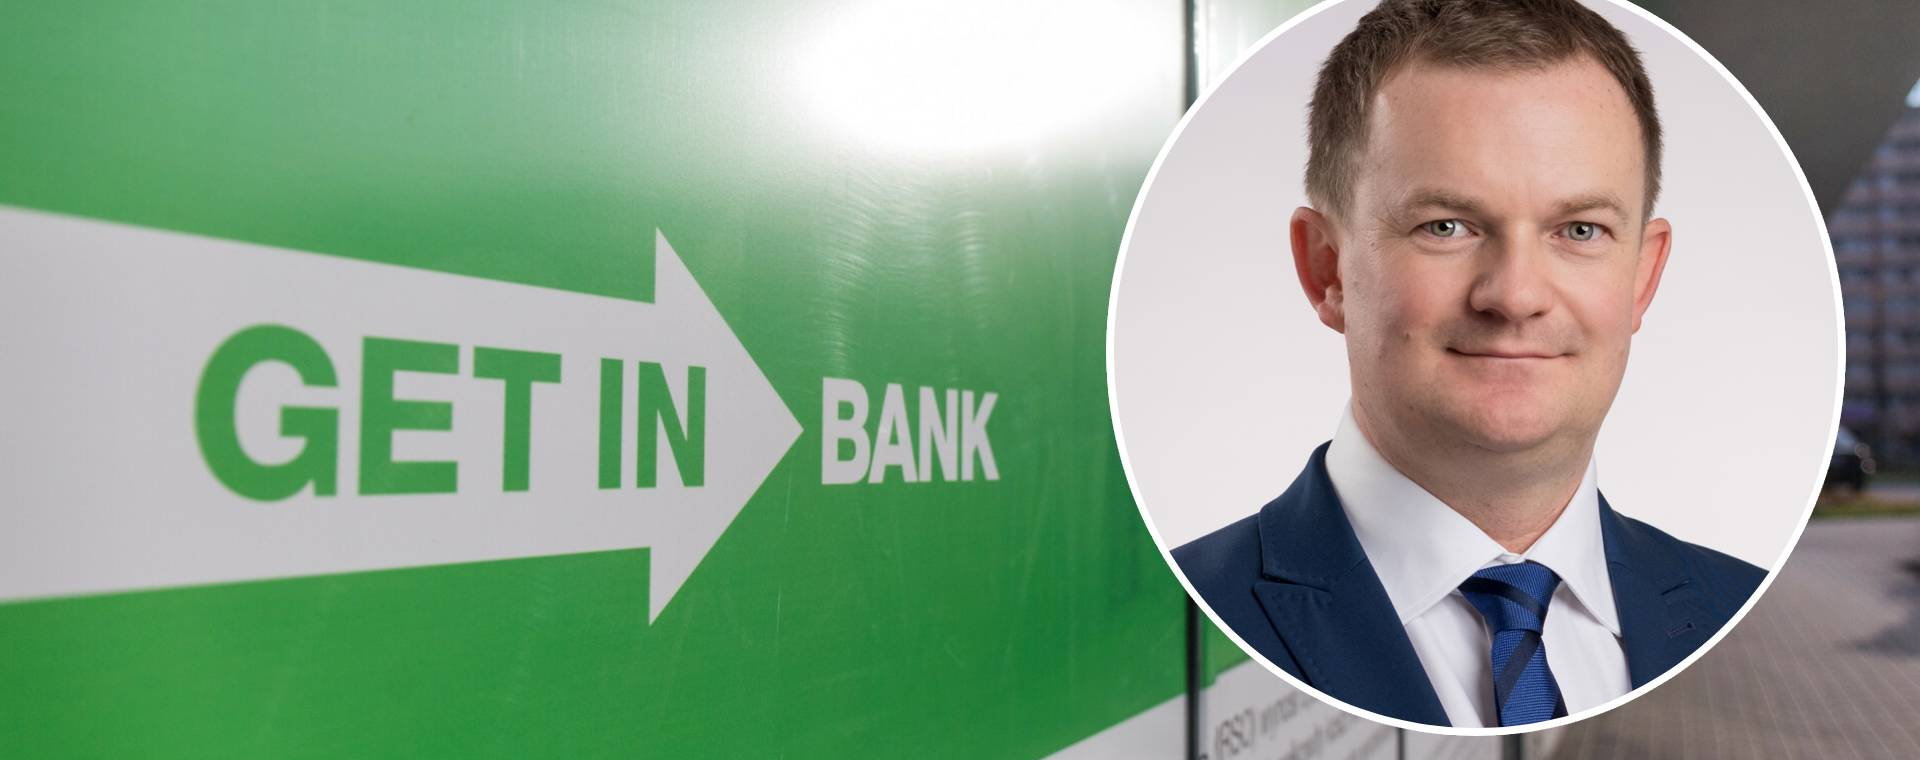 Radca prawny Tomasz Konieczny radzi, co mogą zrobić kredytobiorcy z Getin Banku